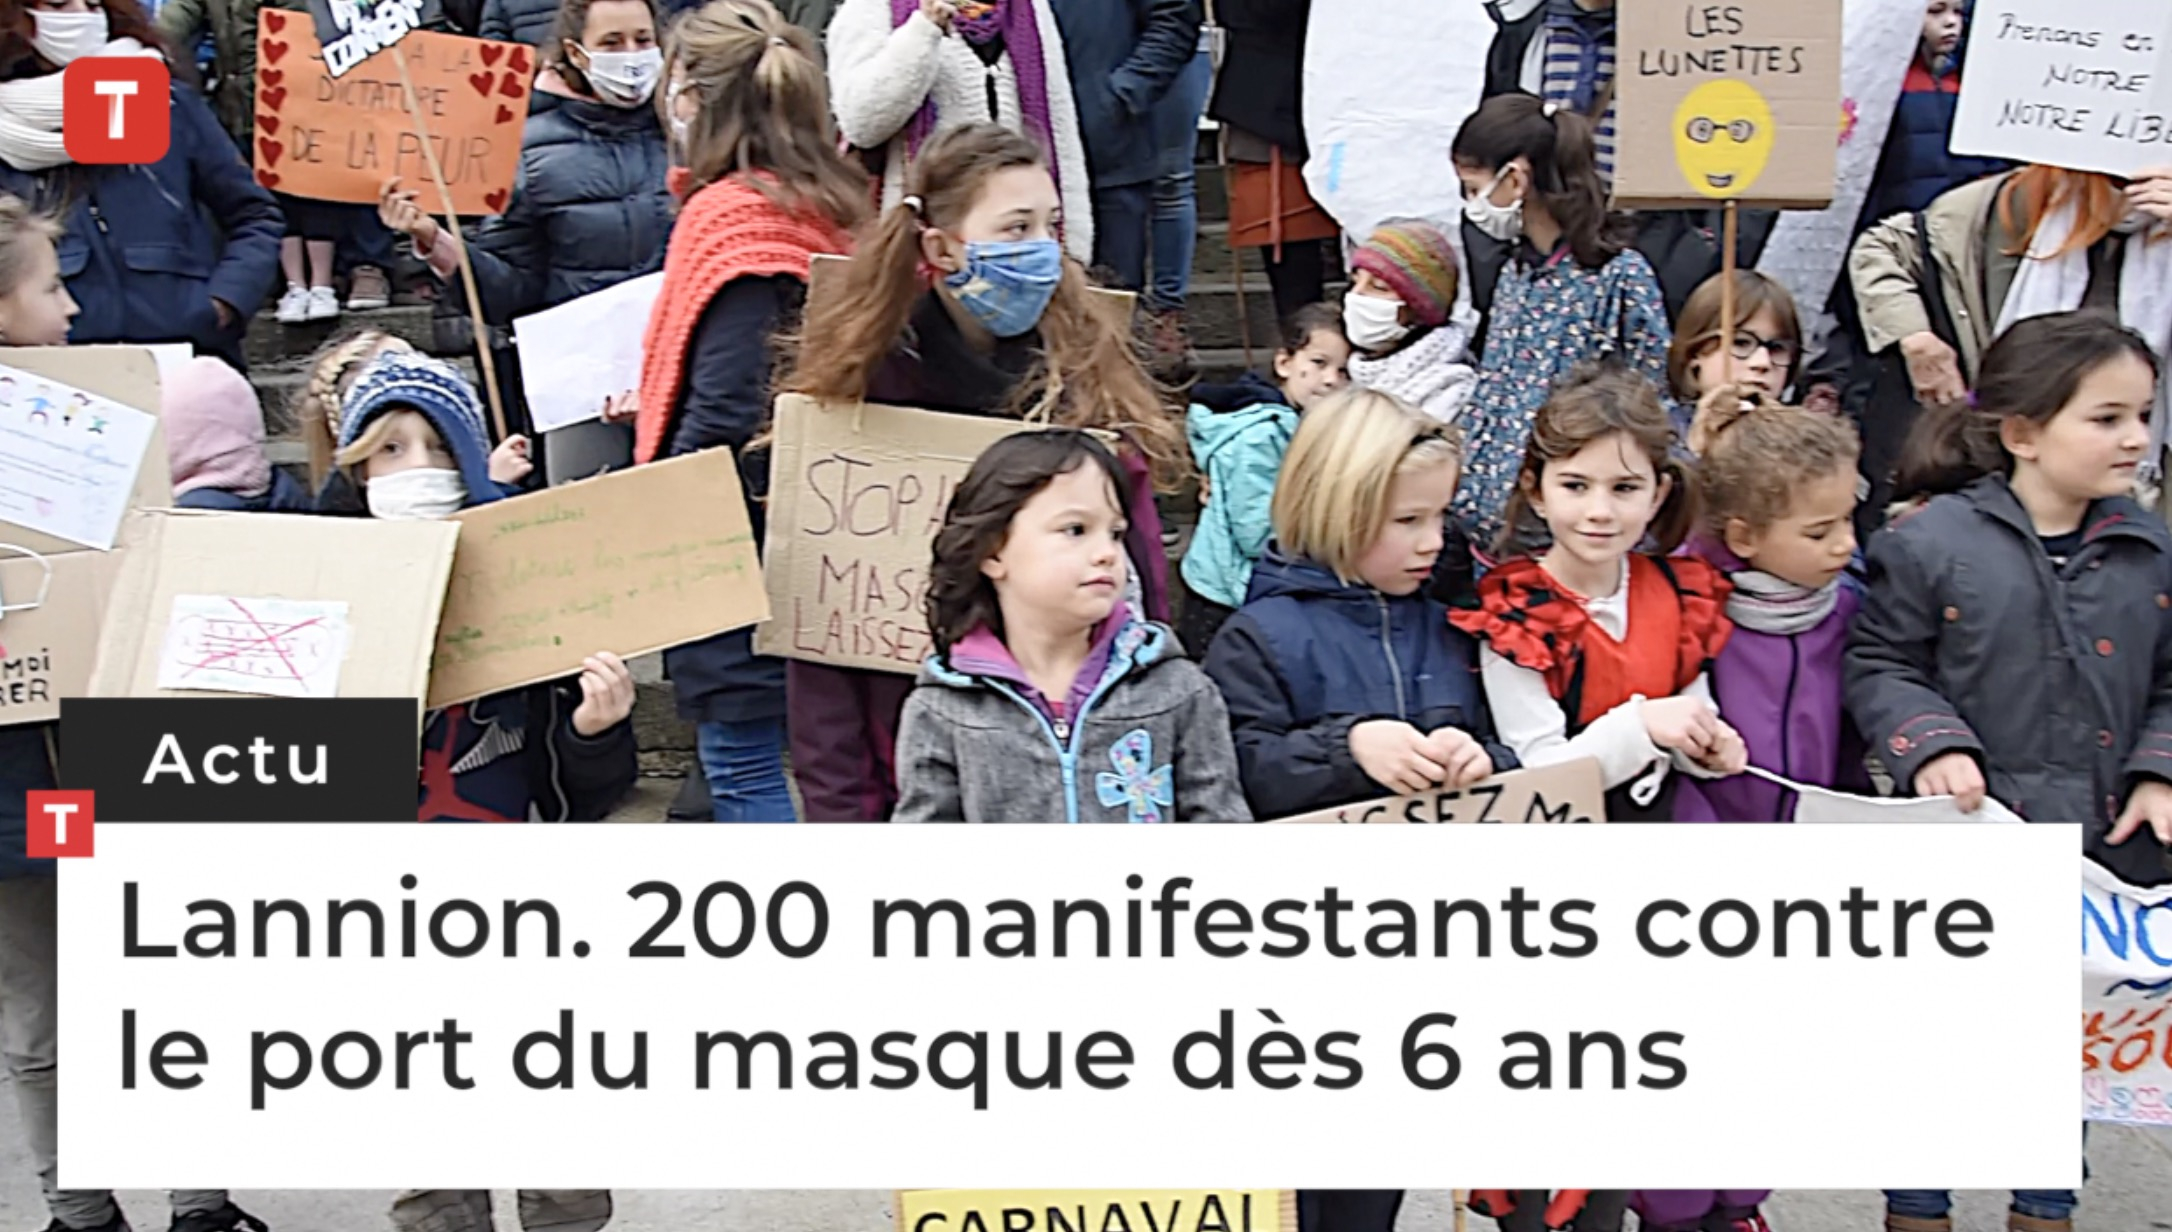 Lannion. 200 manifestants contre le port du masque dès 6 ans (Le Télégramme)